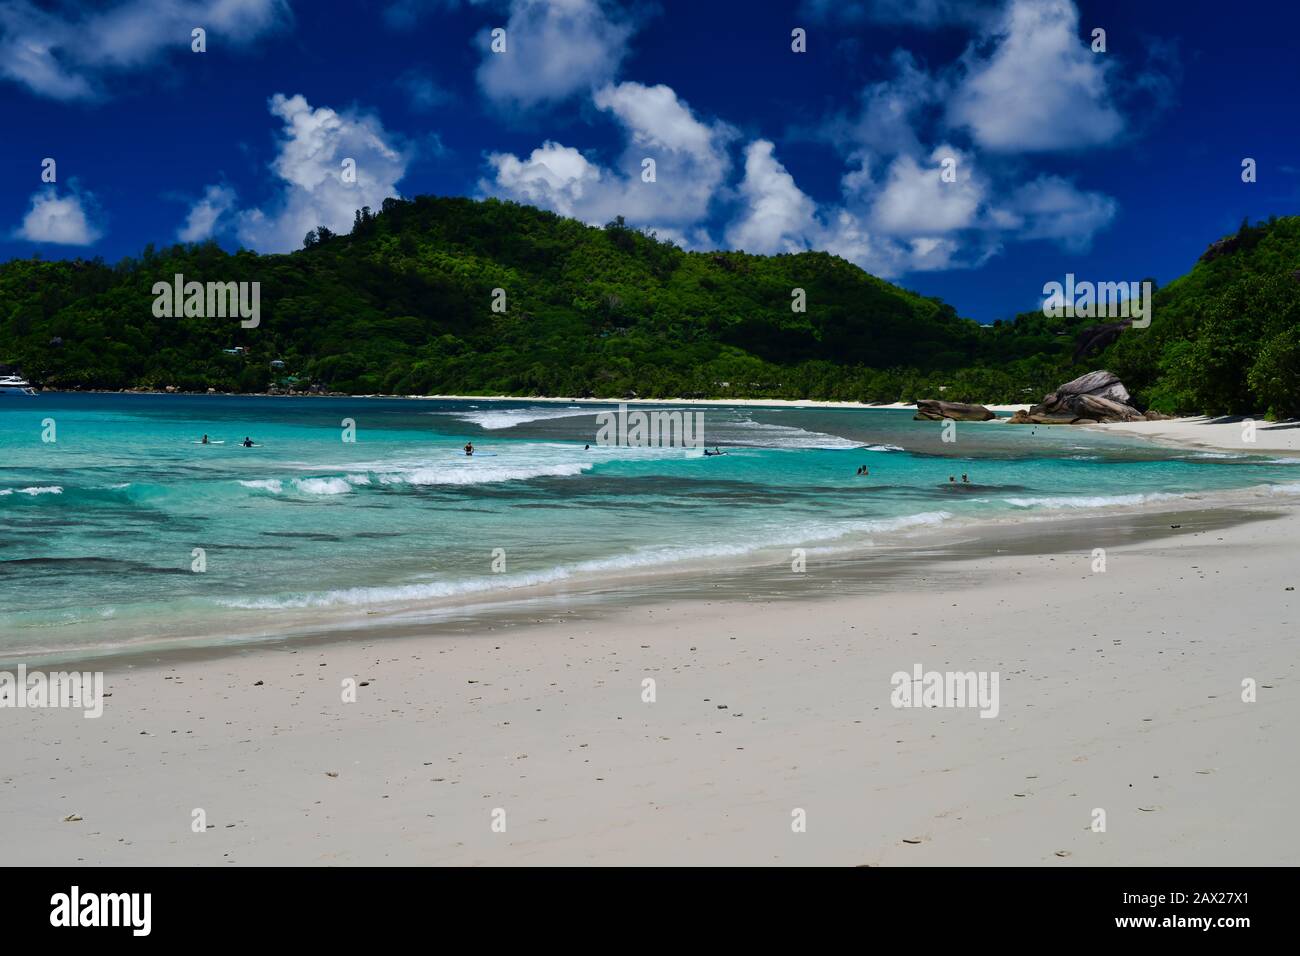 Isola di Mahe Seychelles - Novembre 13th 2019: Turisti che trascorrono del tempo sulla spiaggia. Foto Stock